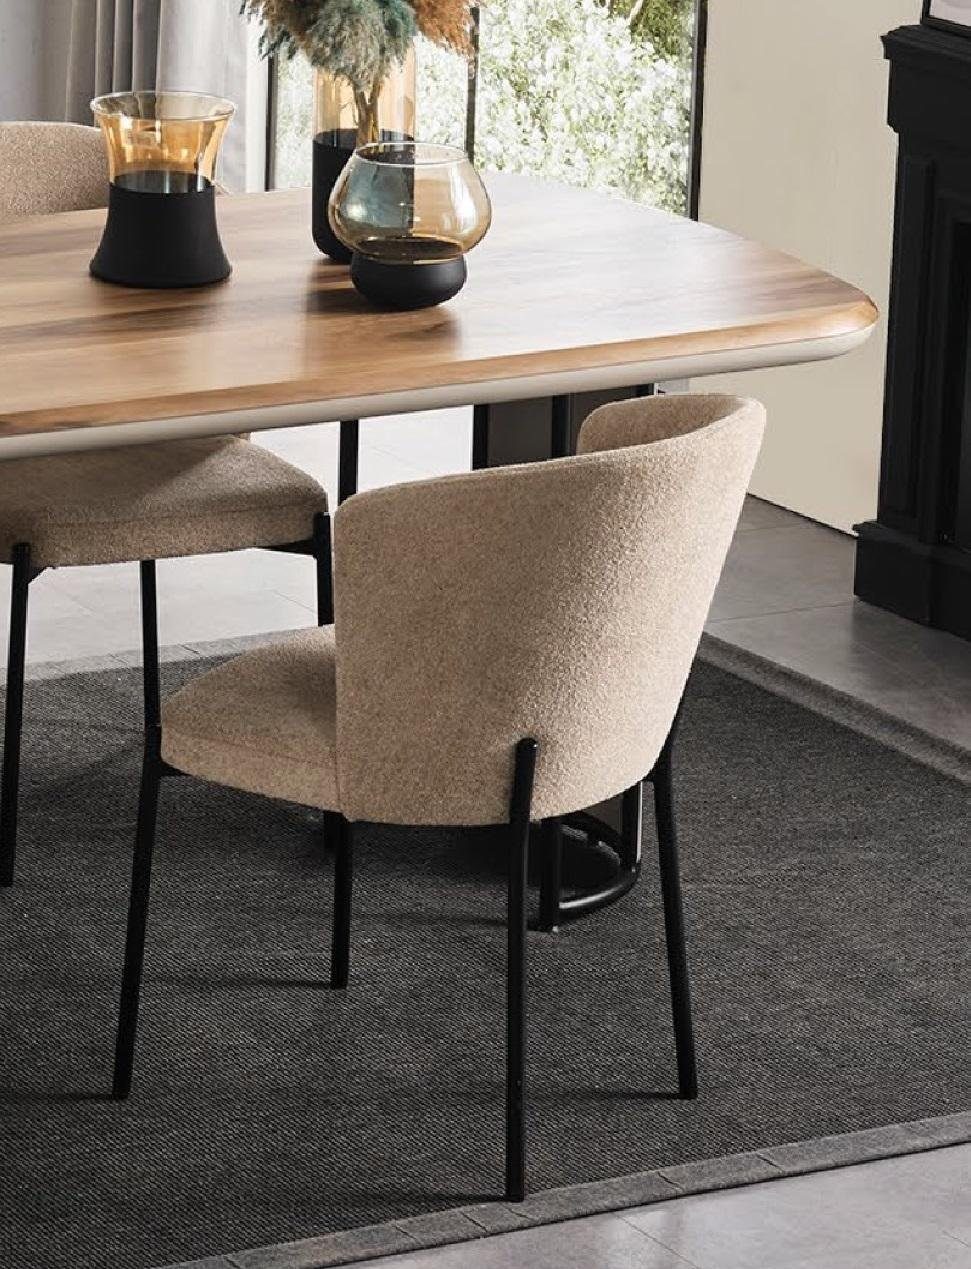 JVmoebel Stuhl Stuhl Modern Holz Polster Esszimmer Stühle Textil Farbe Beige 1 Sitzer | Stühle